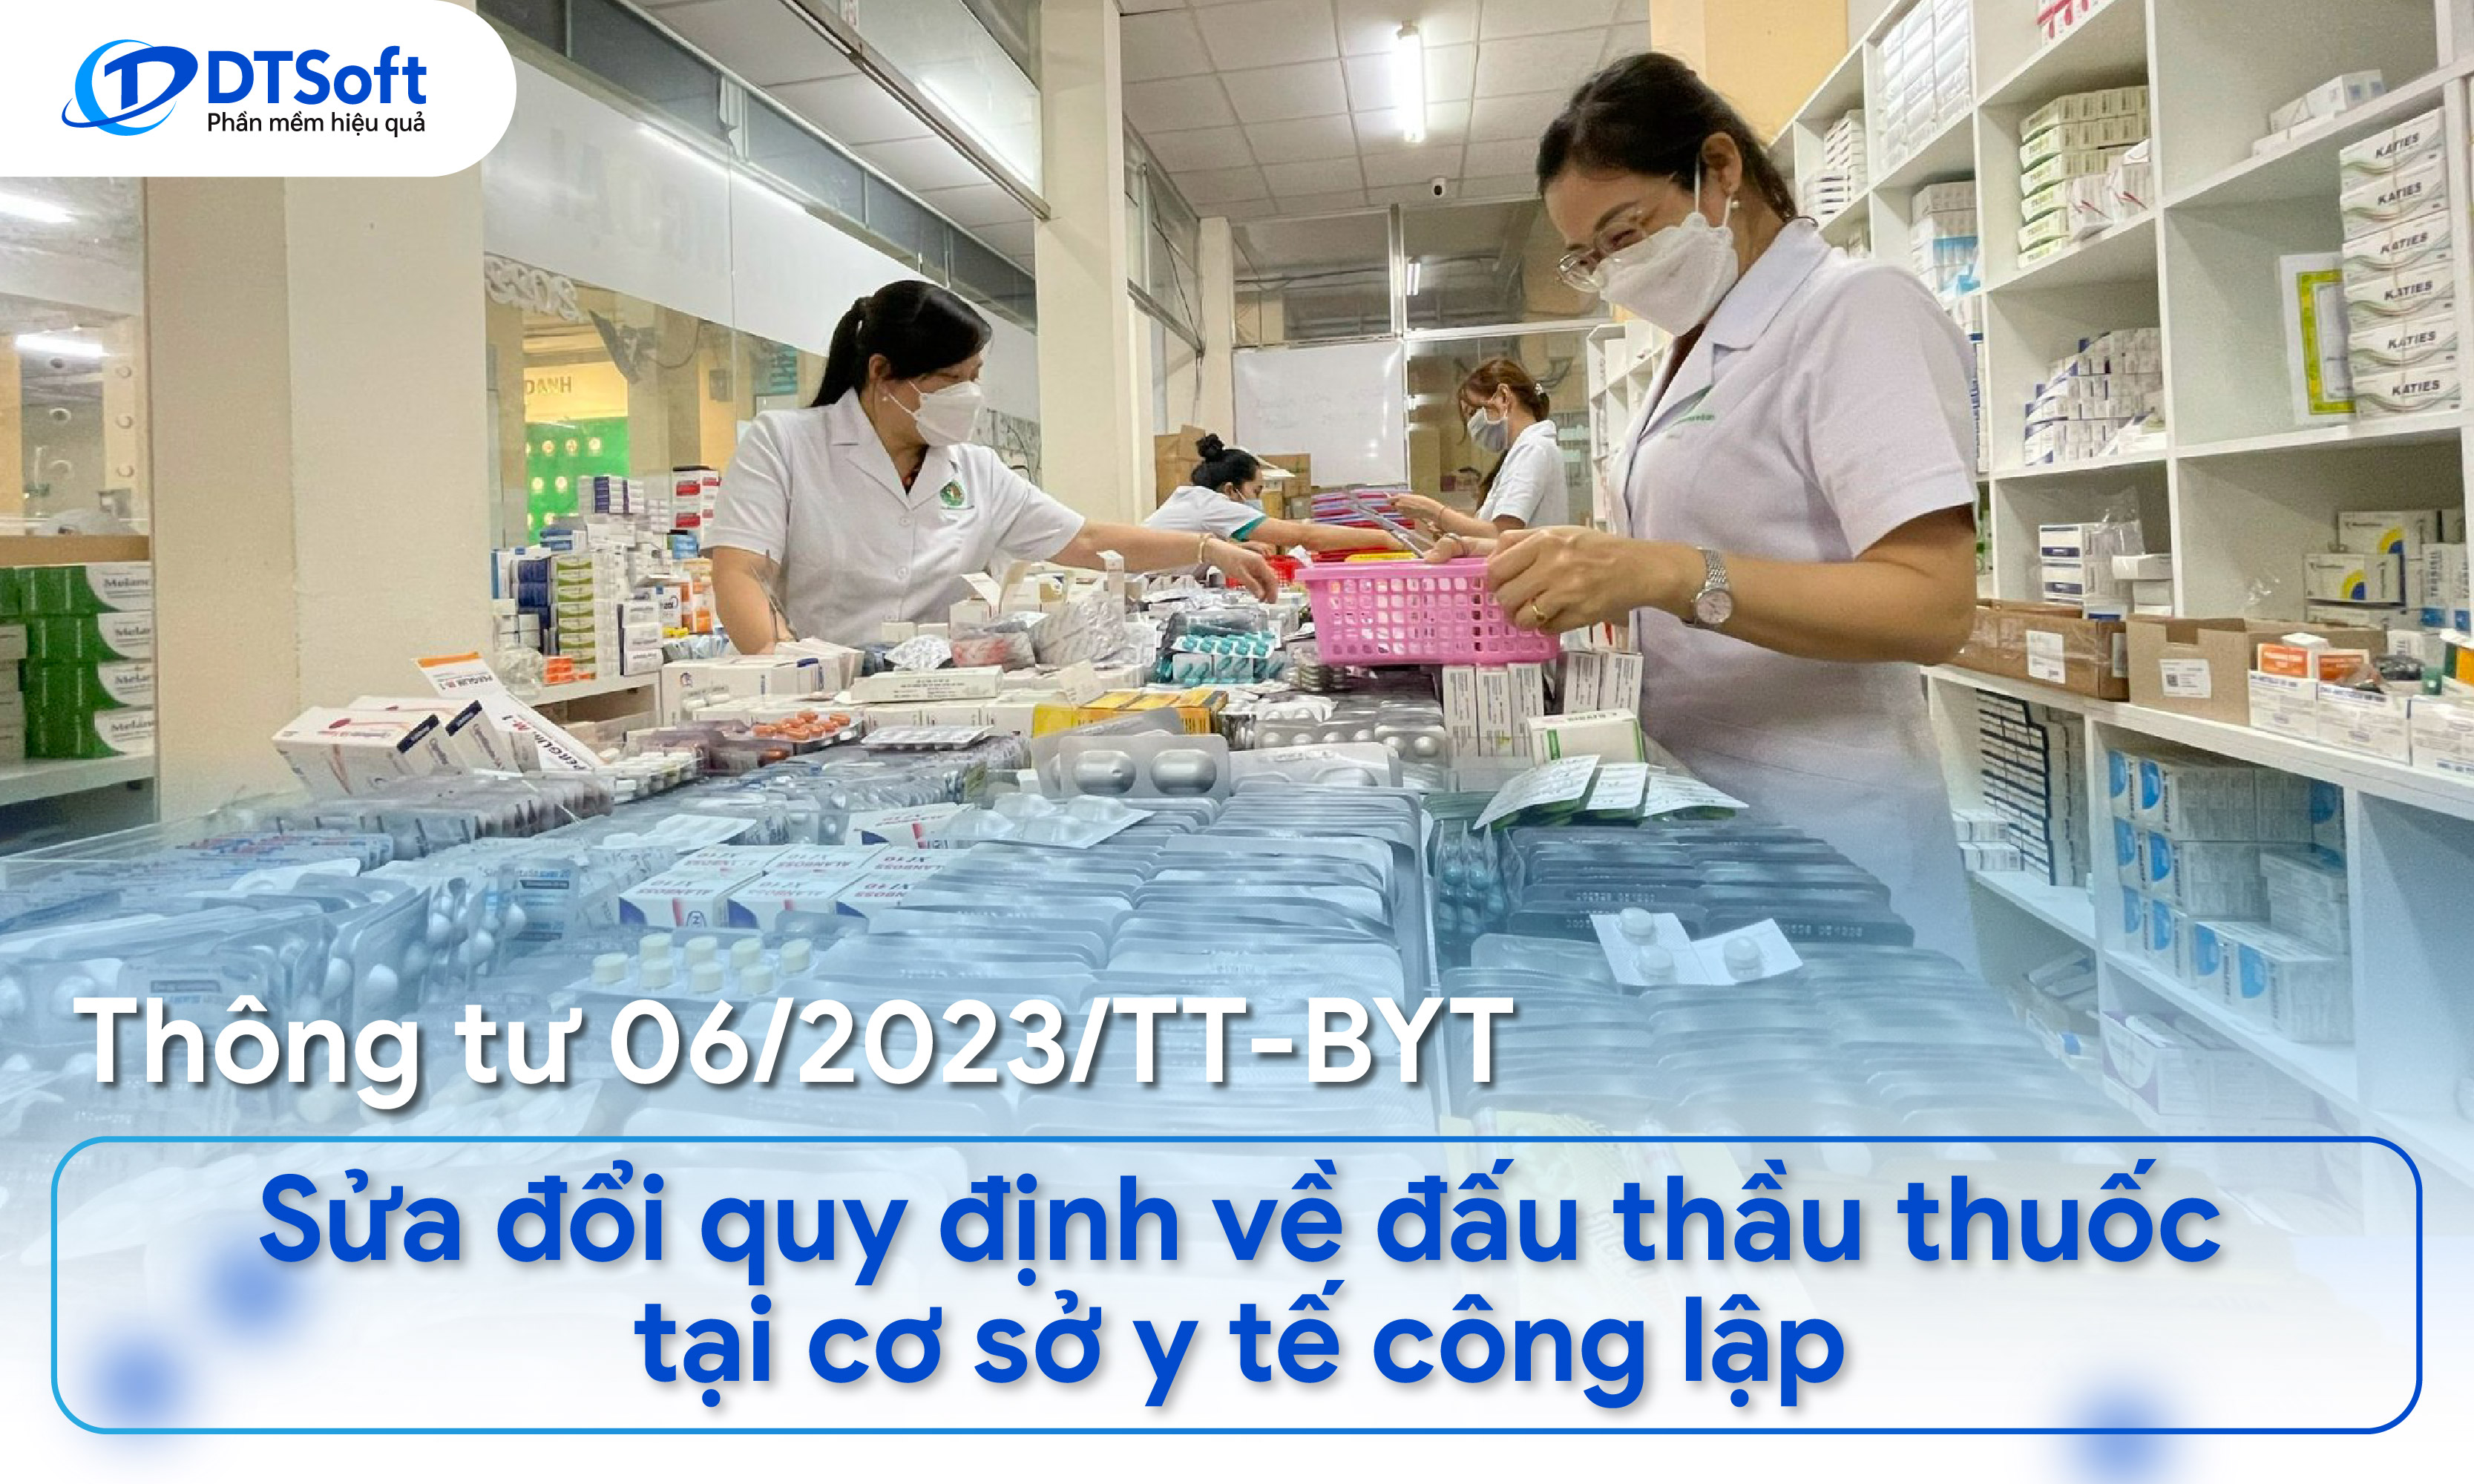 Thông tư 06/2023/TT-BYT - Sửa đổi quy định về đấu thầu thuốc tại cơ sở y tế công lập